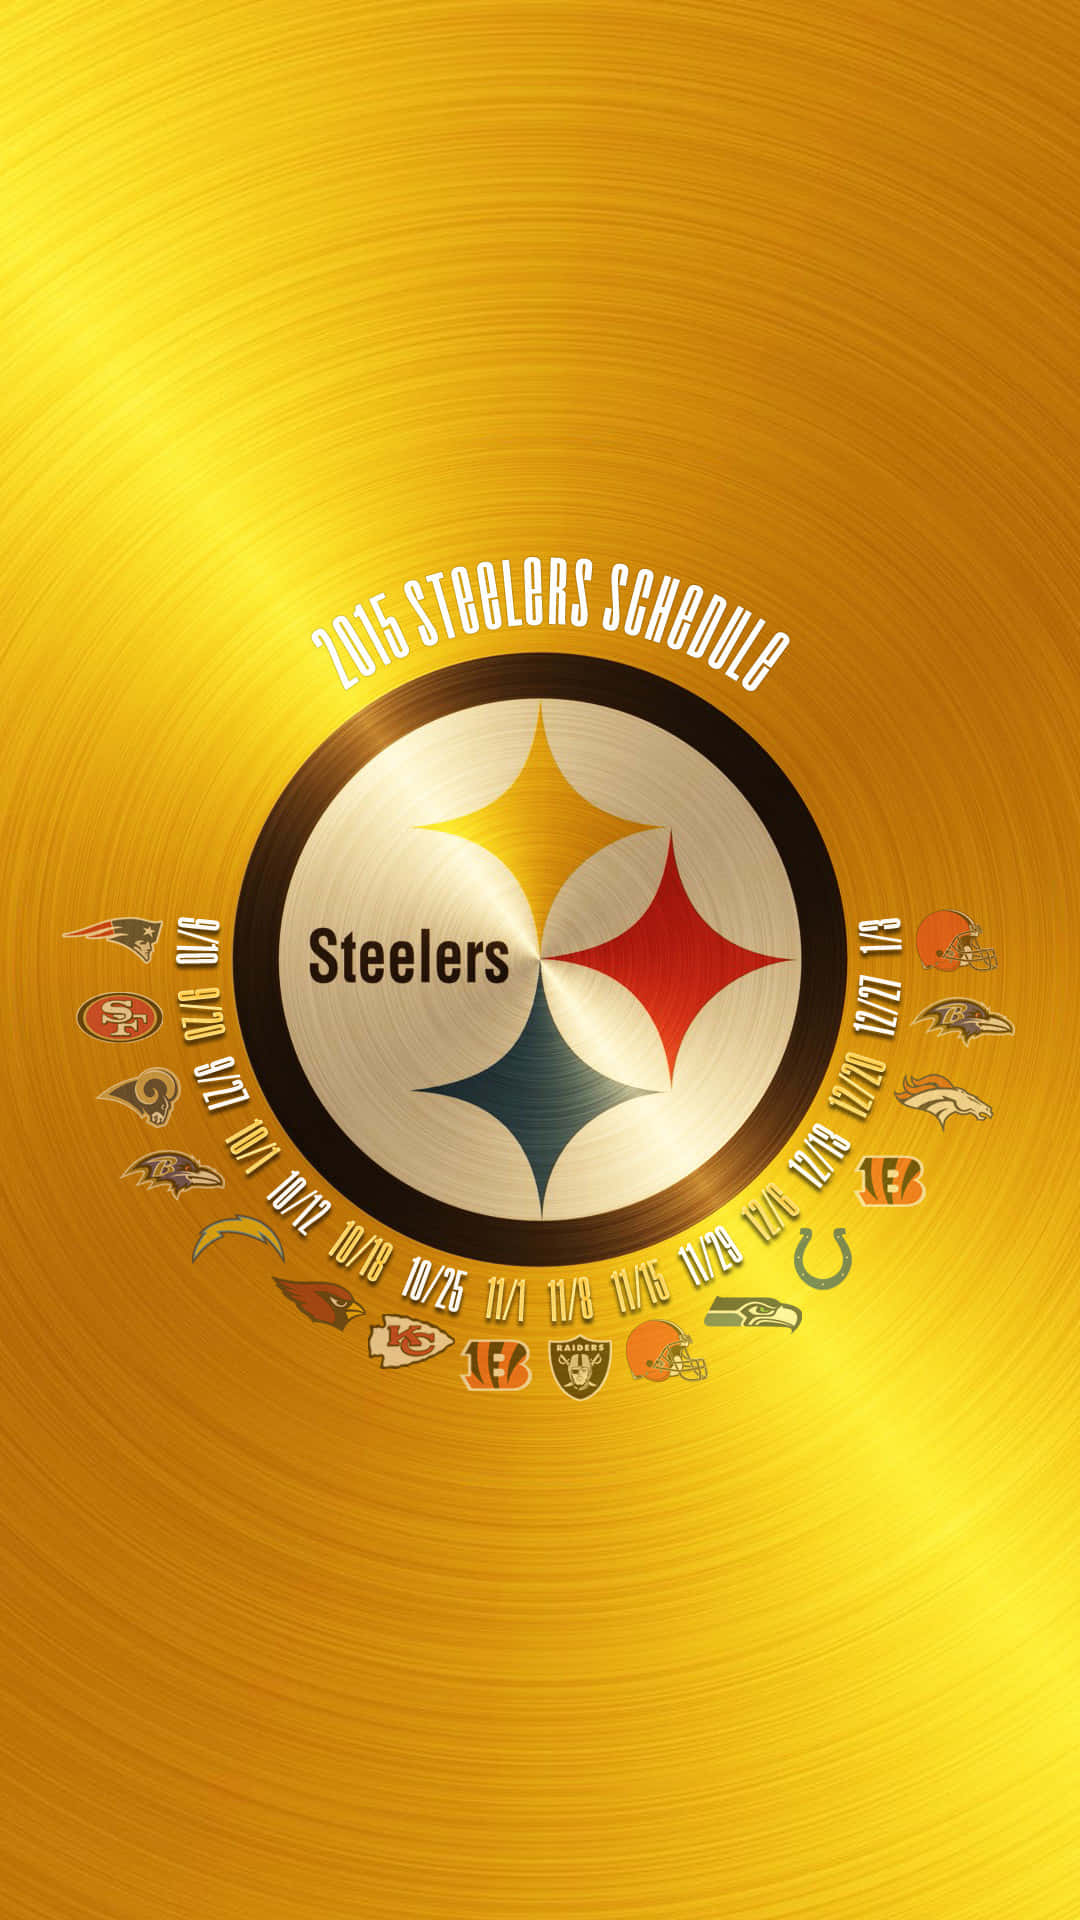 Vis din Steeler stolthed med det tema, der er af Pittsburgh Steelers-Iphone-tapet. Wallpaper